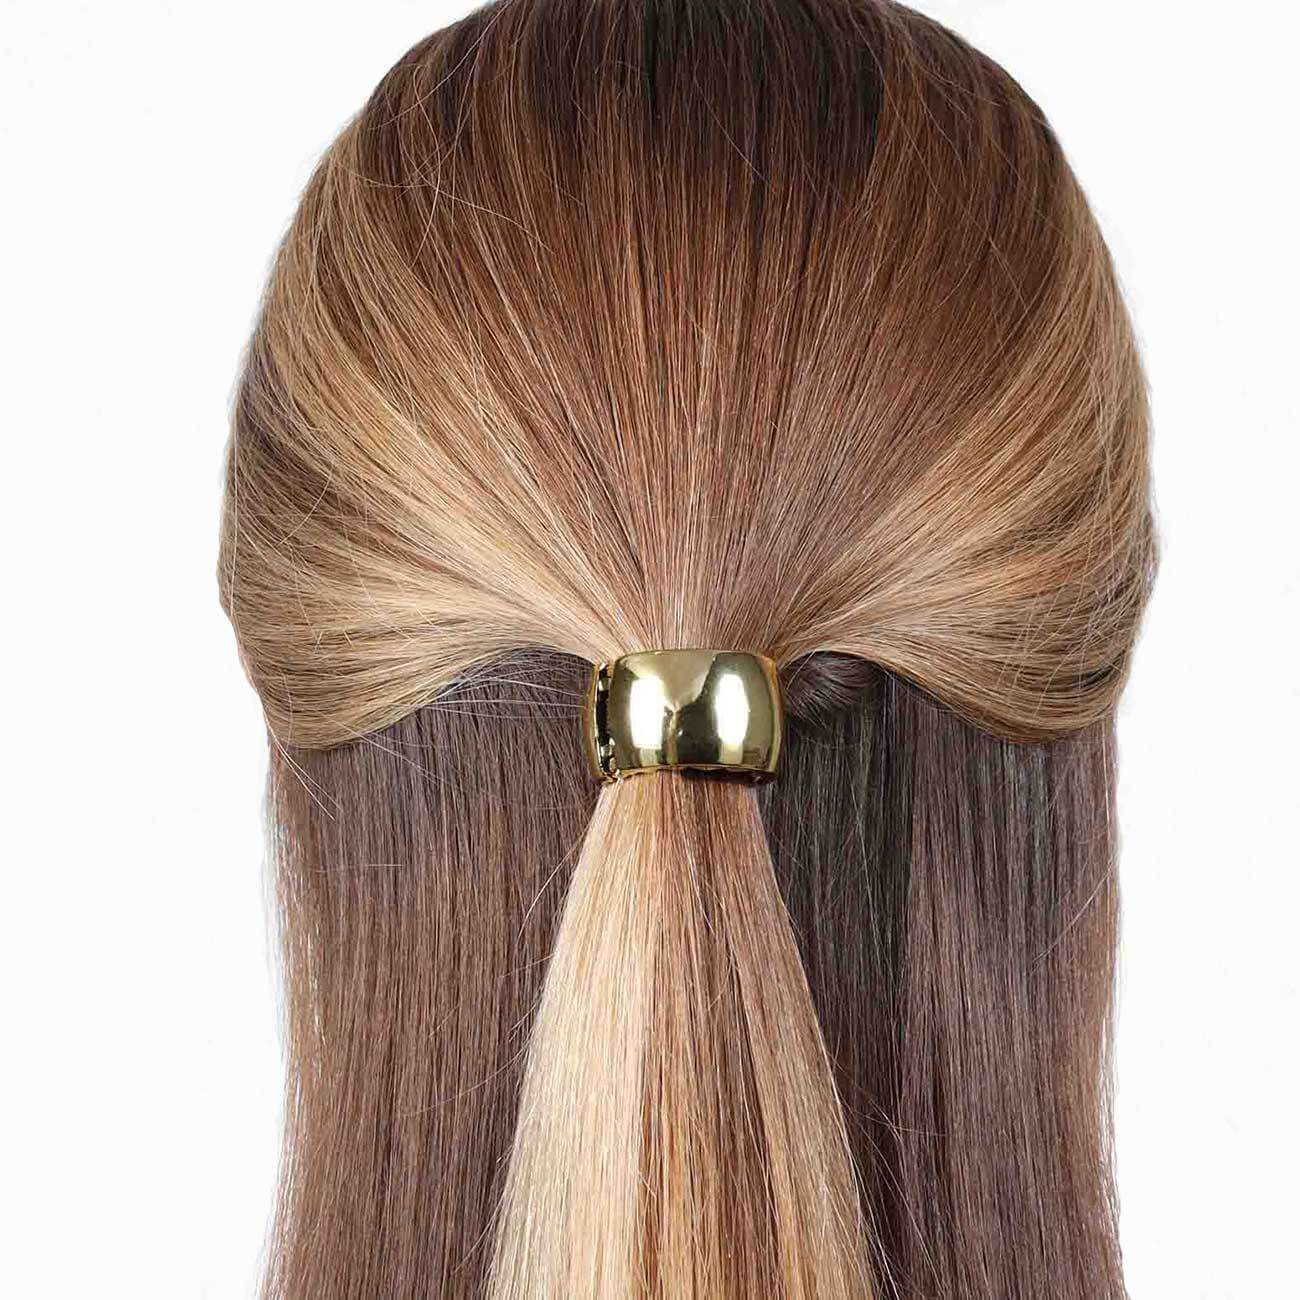 Резинка для волос, 5 см, с кольцом-зажимом, пластик, золотистая, Кольцо, Hairstyle резинка для волос вива шарики микс